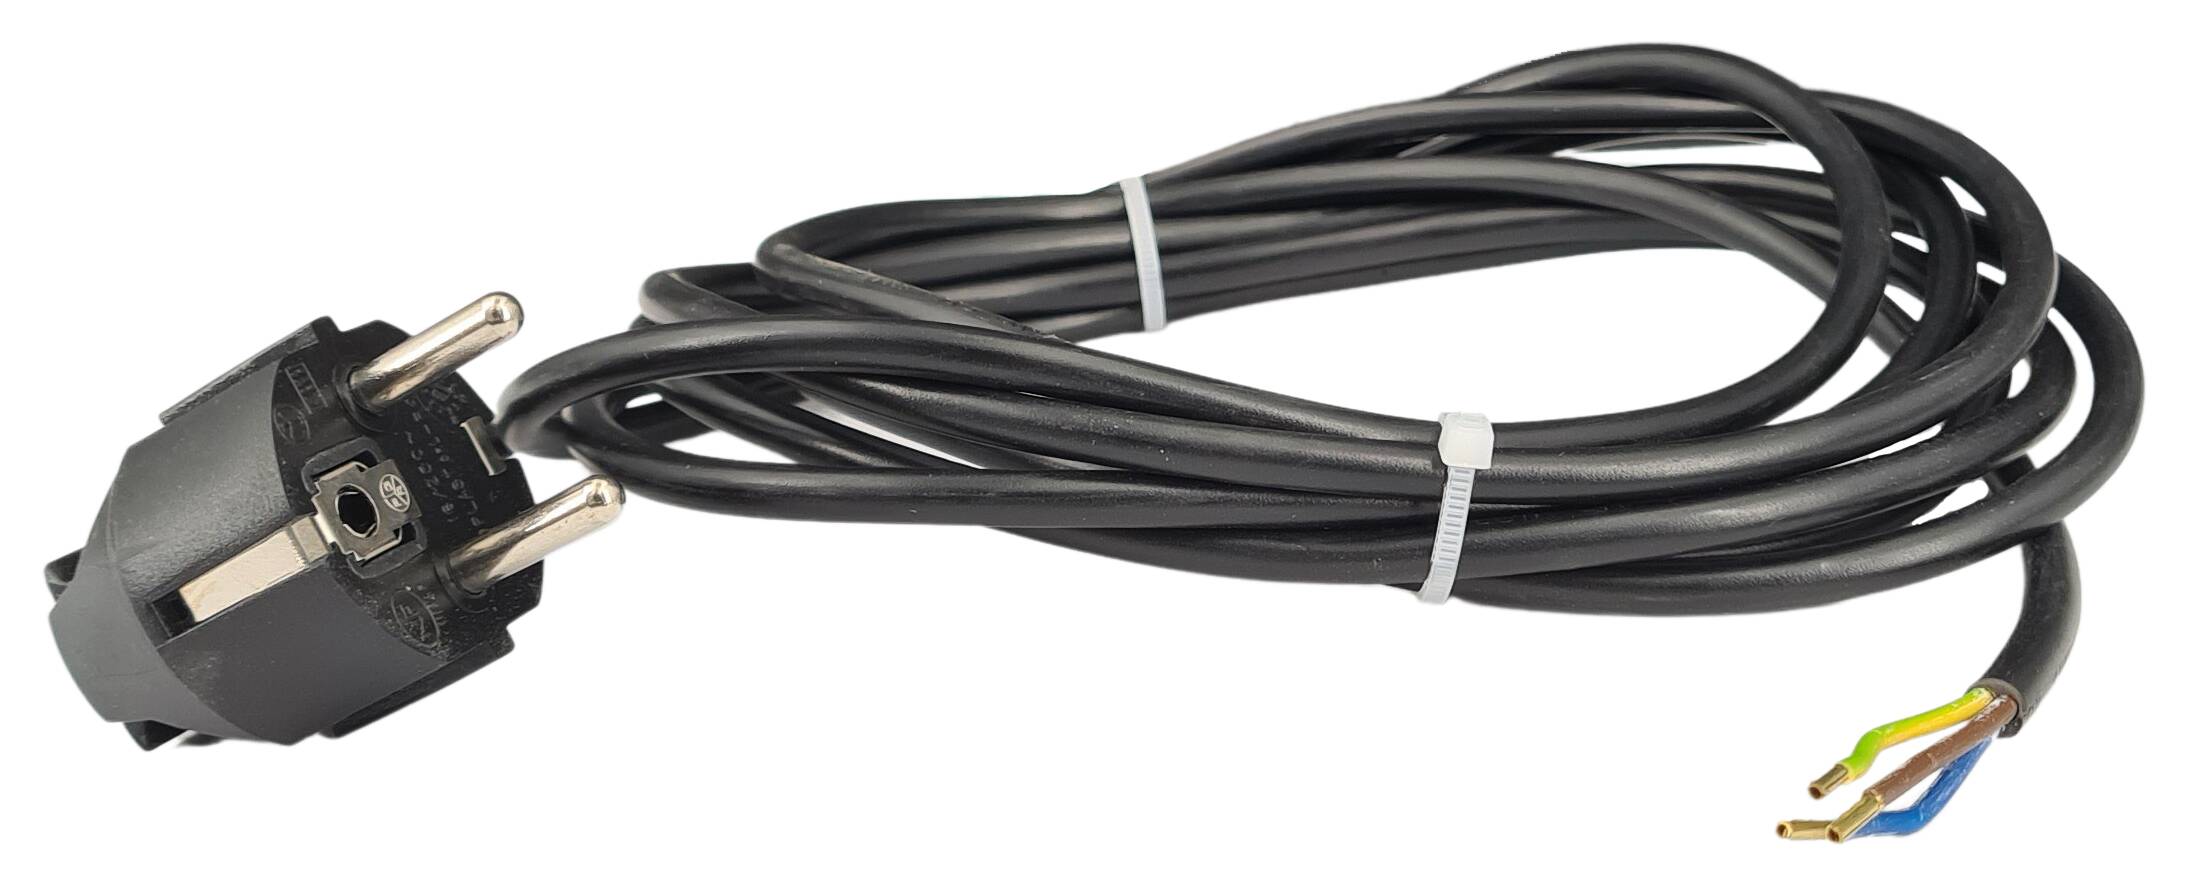 cord-set 3G 0,75/3000 with schuko angled plug black